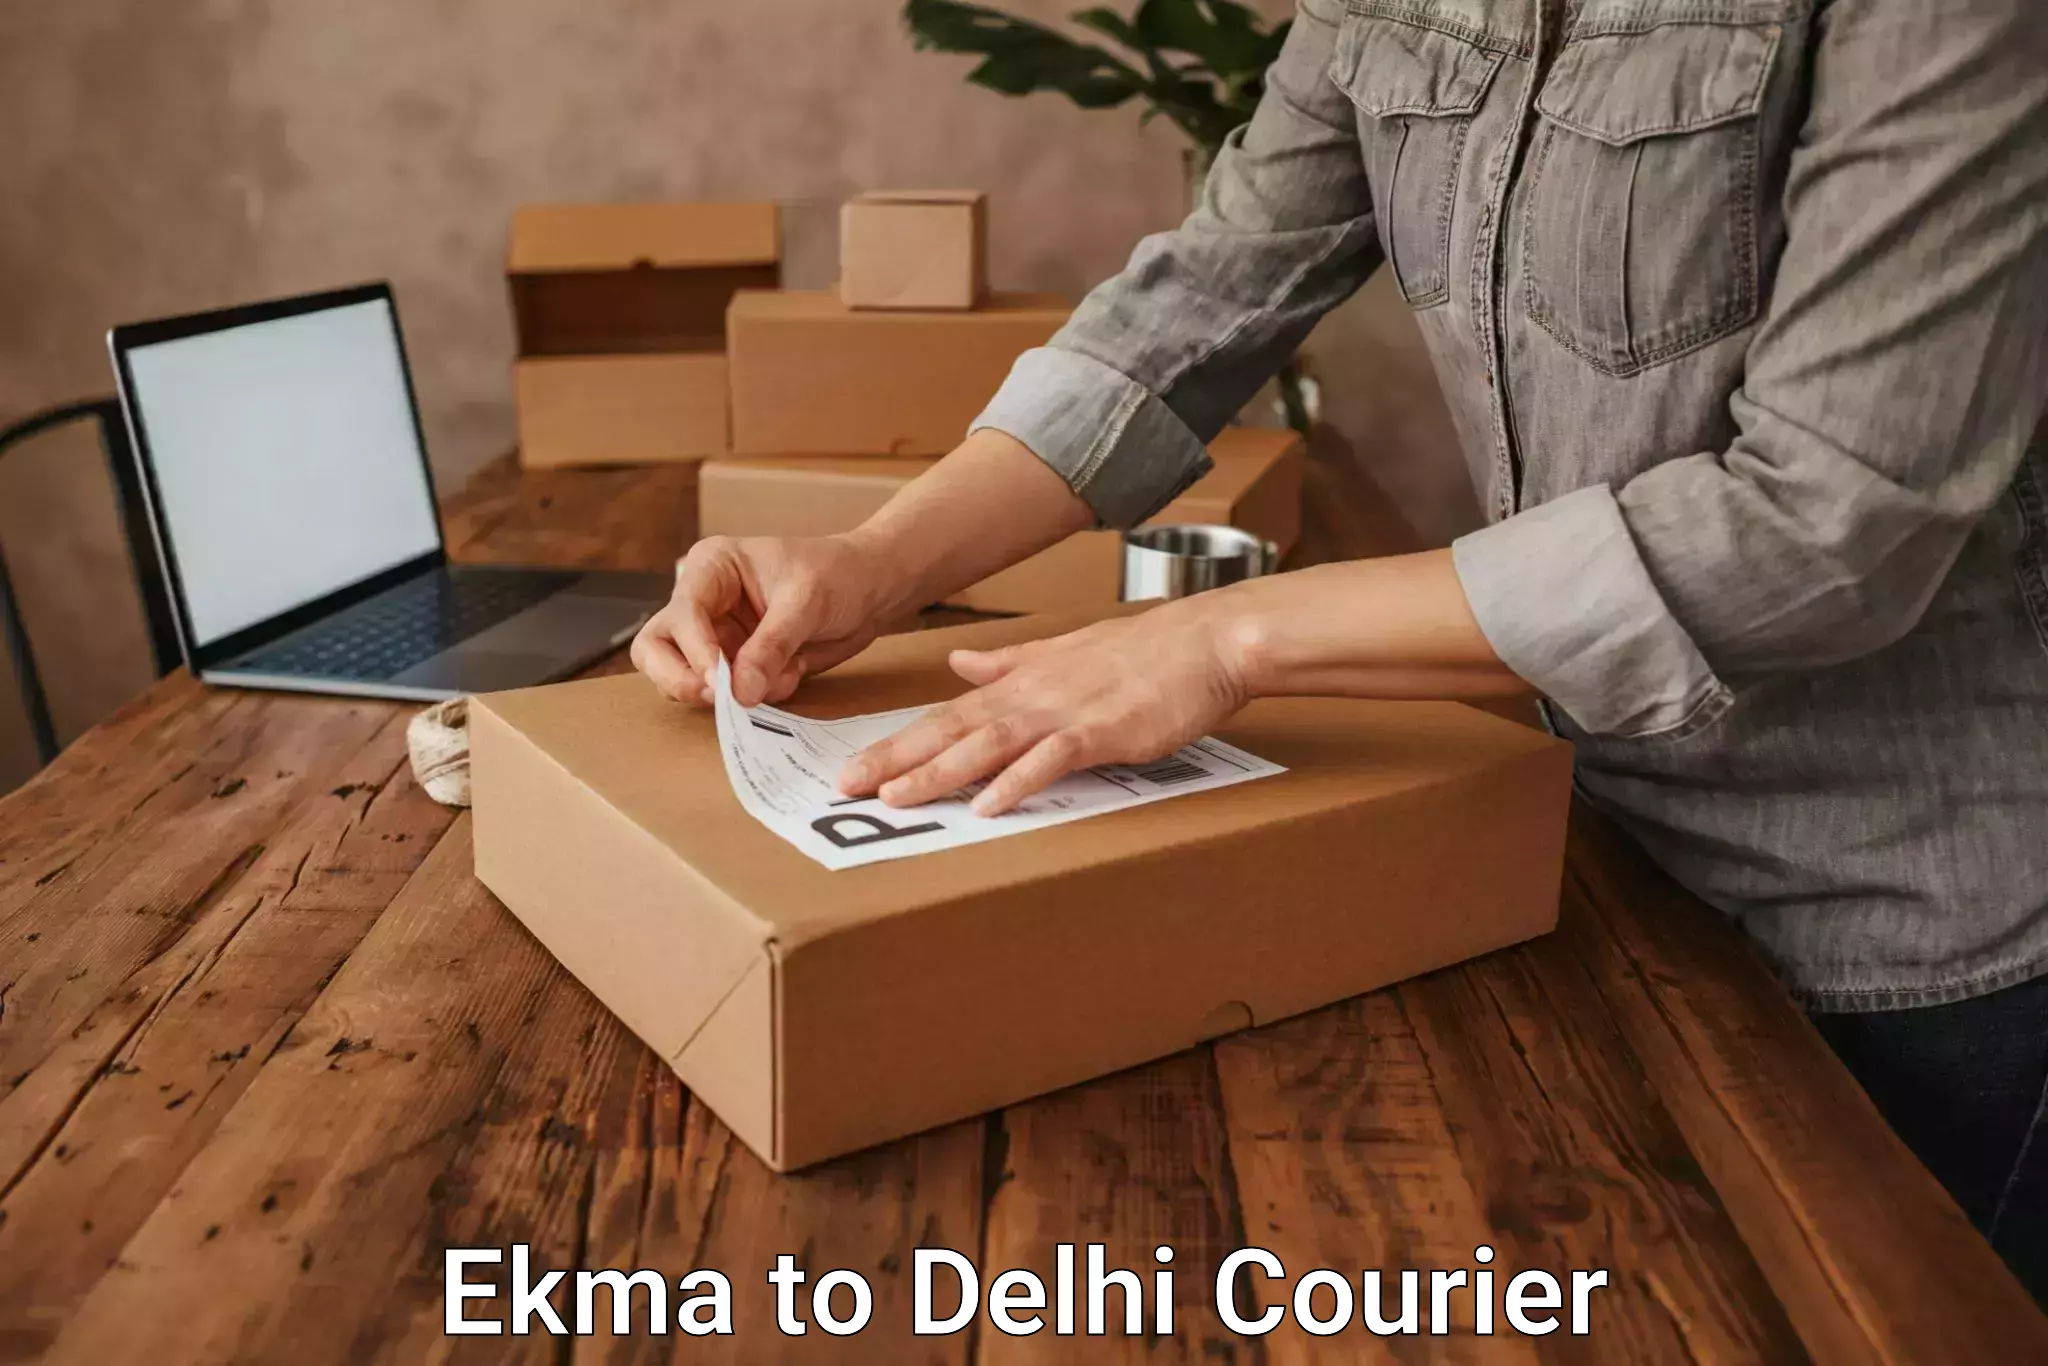 Household goods transporters Ekma to East Delhi